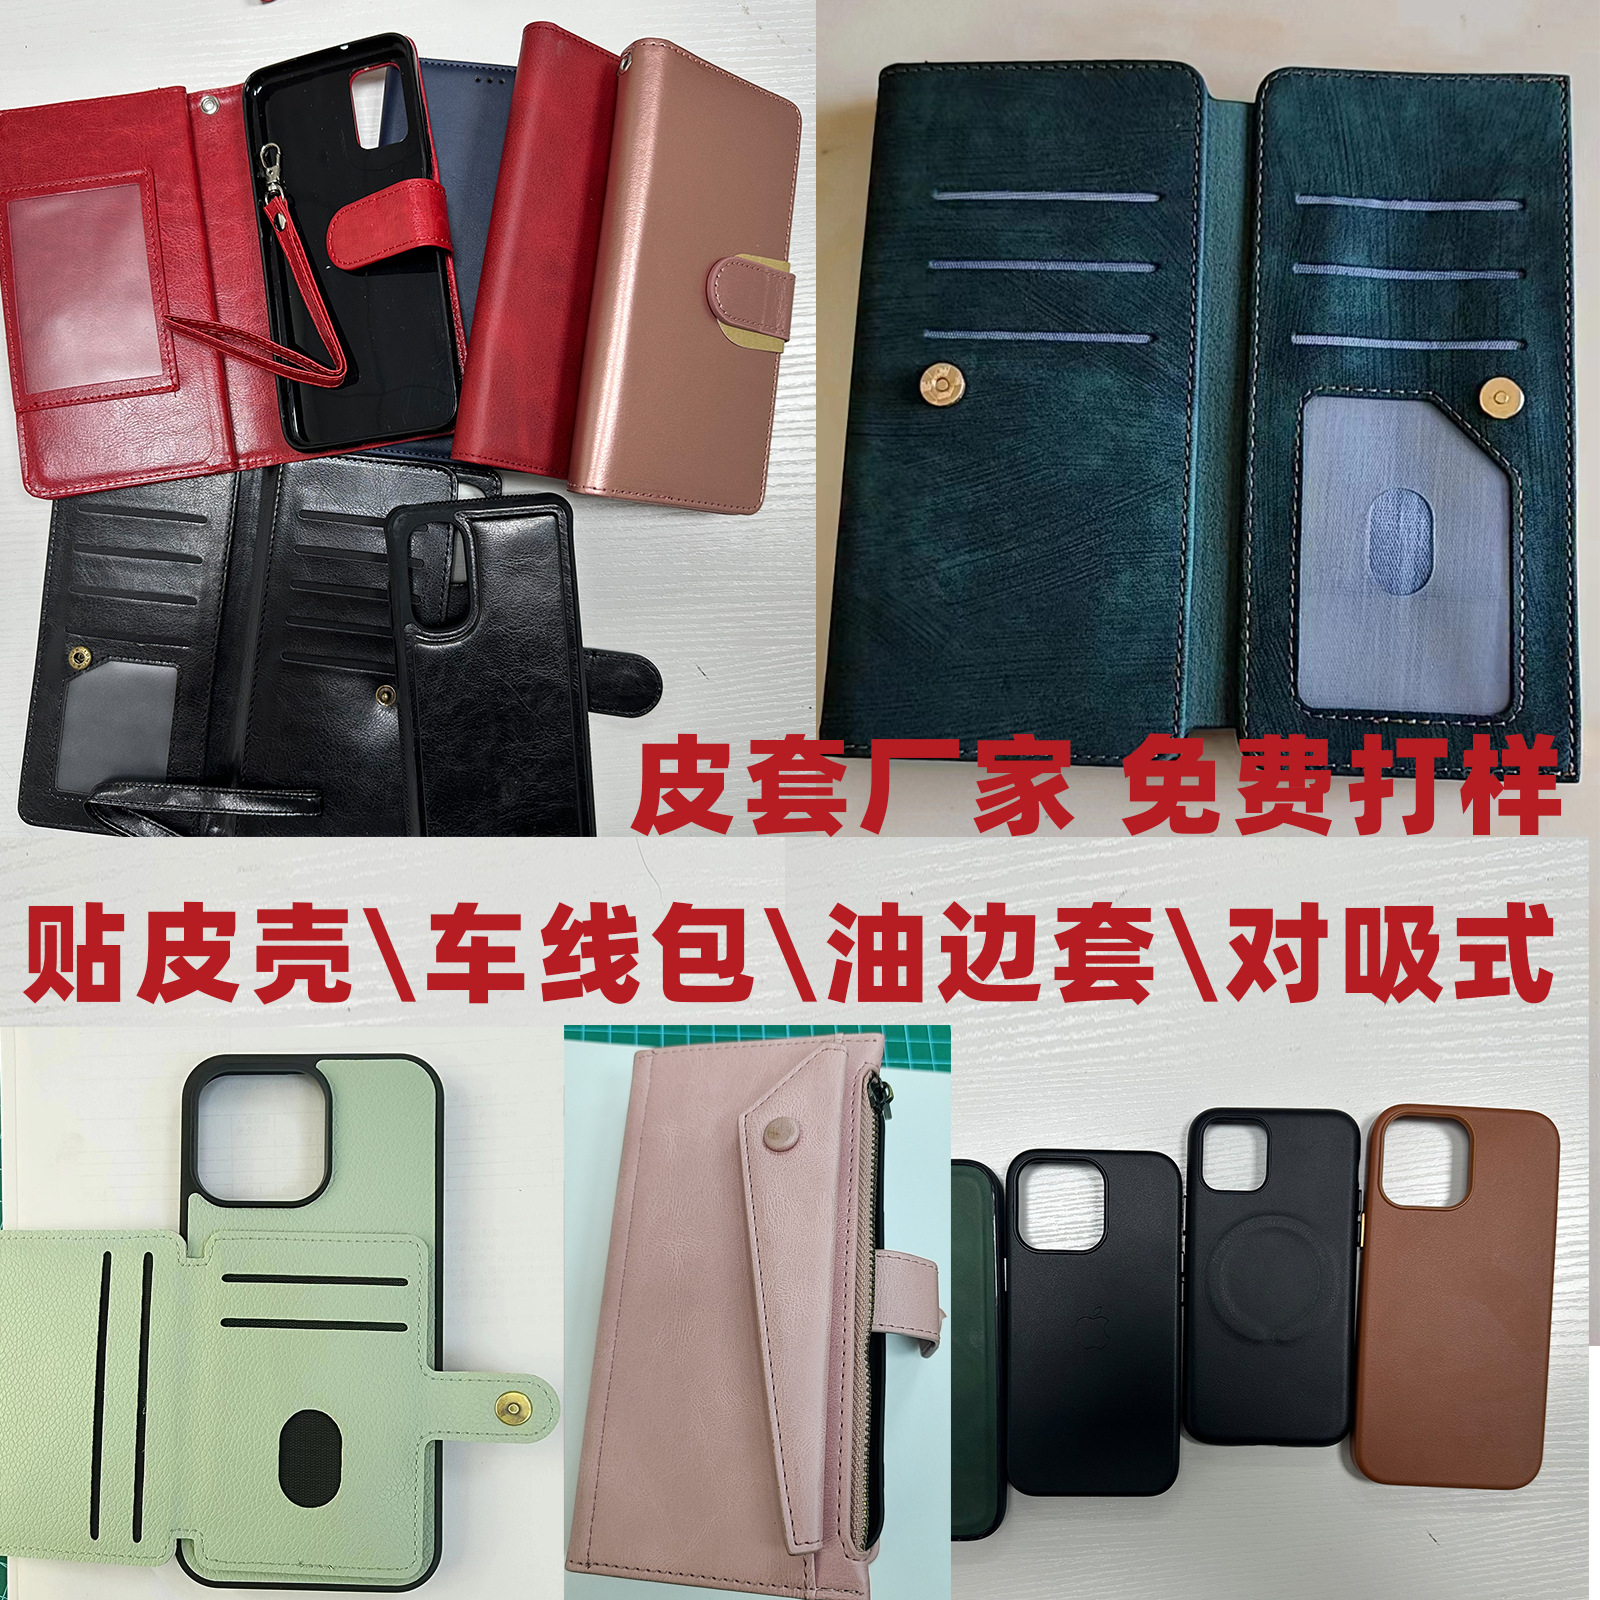 手机皮套生产加工打样 小额批发工厂iphone leather case factory